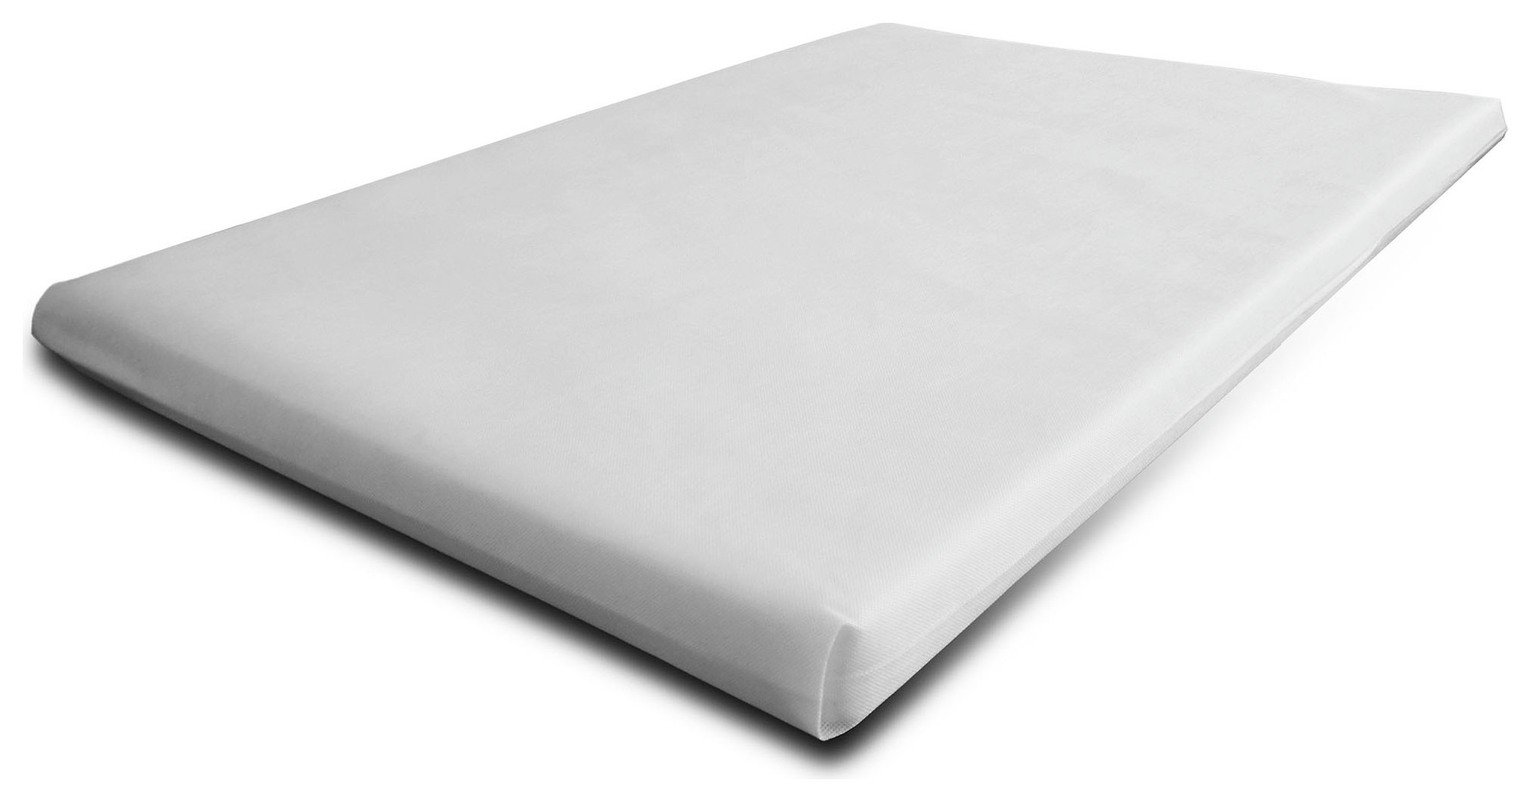 foam mattress pad for cot